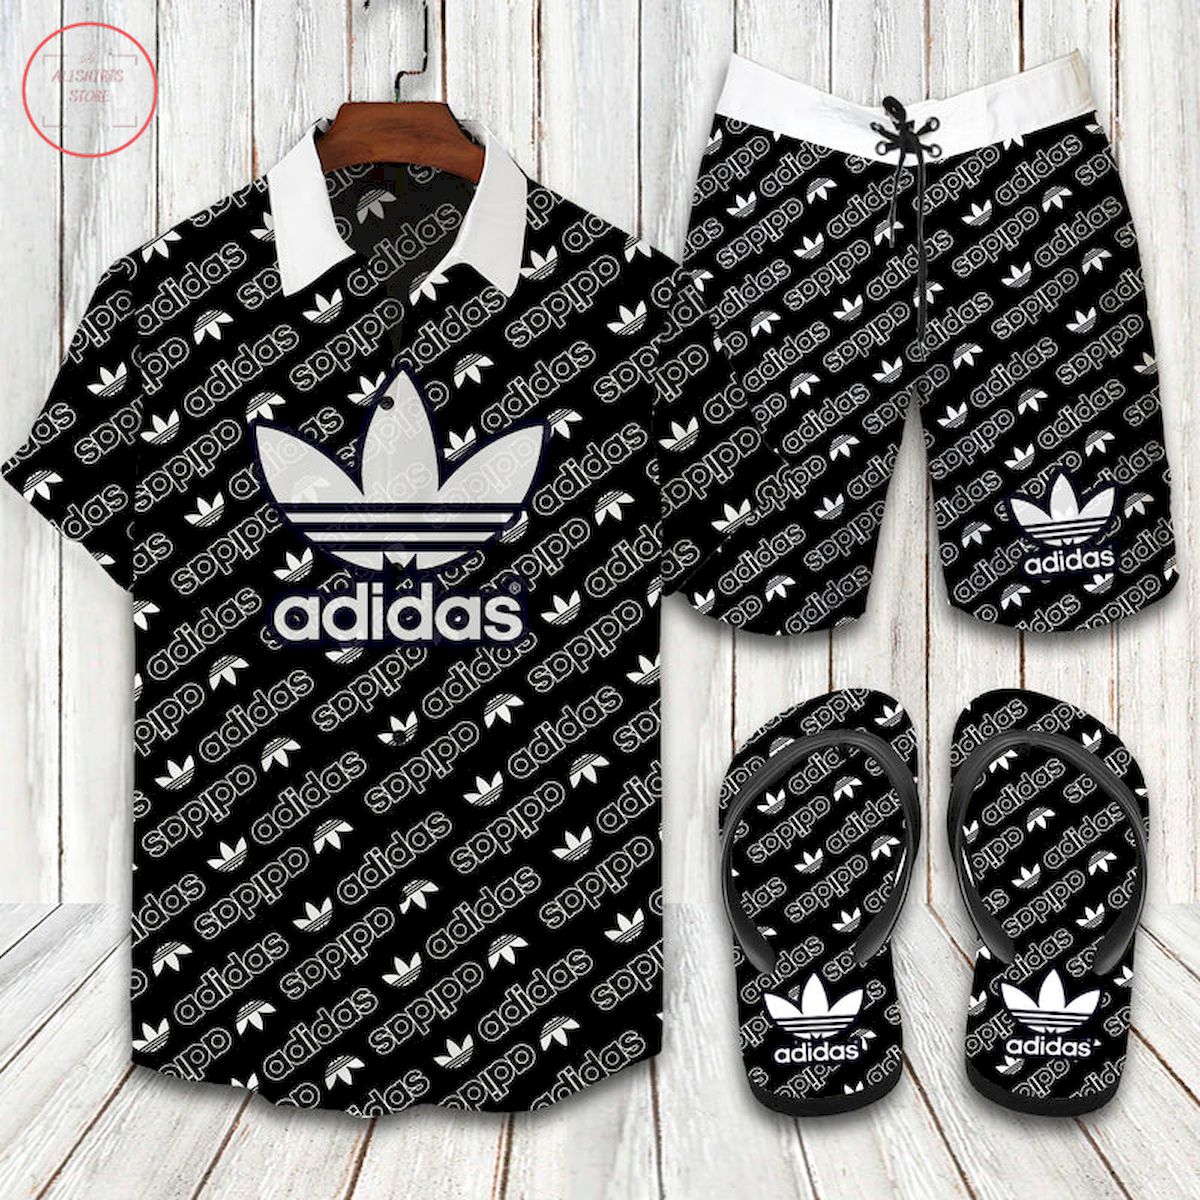 Adidas Originals Hawaiian Shirt and Shorts